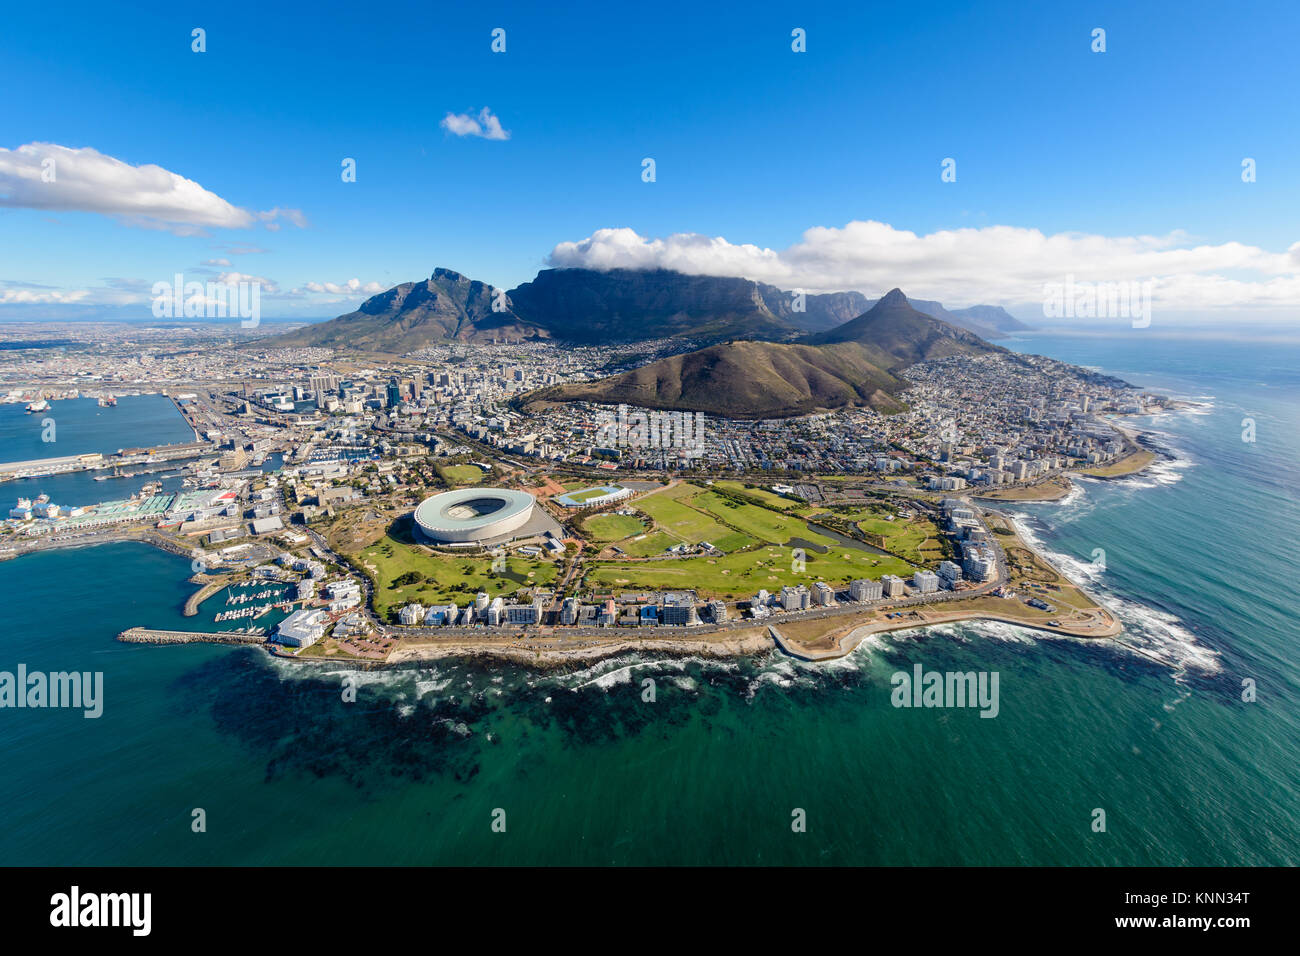 Vue aérienne de la ville du Cap, Afrique du Sud sur un après-midi ensoleillé. Photo prise depuis un hélicoptère pendant air tour de Cape Town Banque D'Images